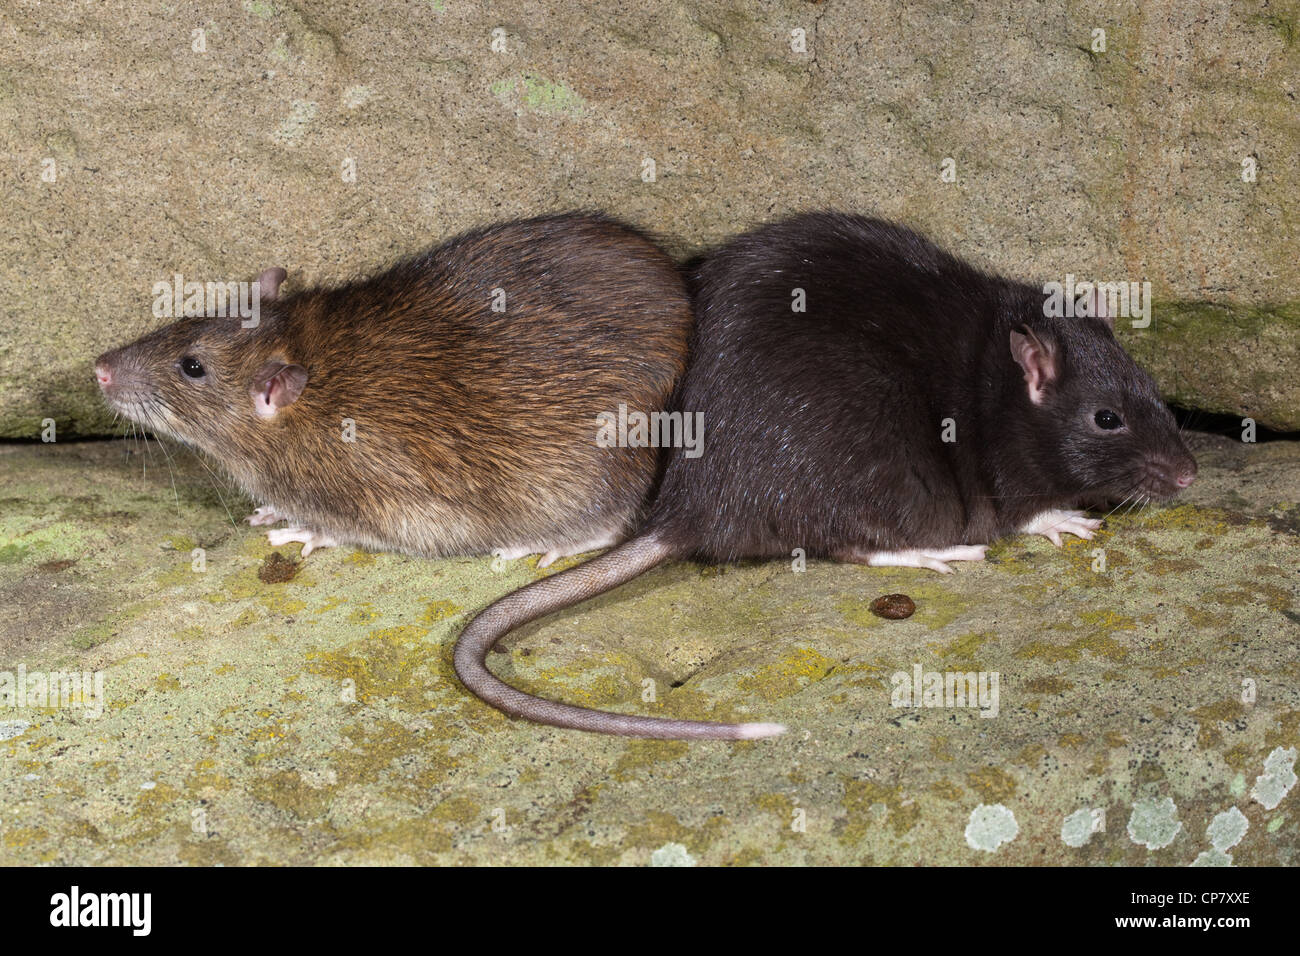 Le rat brun (Rattus norvegicus). 'Noir' ou melanisic forme droite, aux côtés d'un animal de couleur "normale", à gauche. Banque D'Images